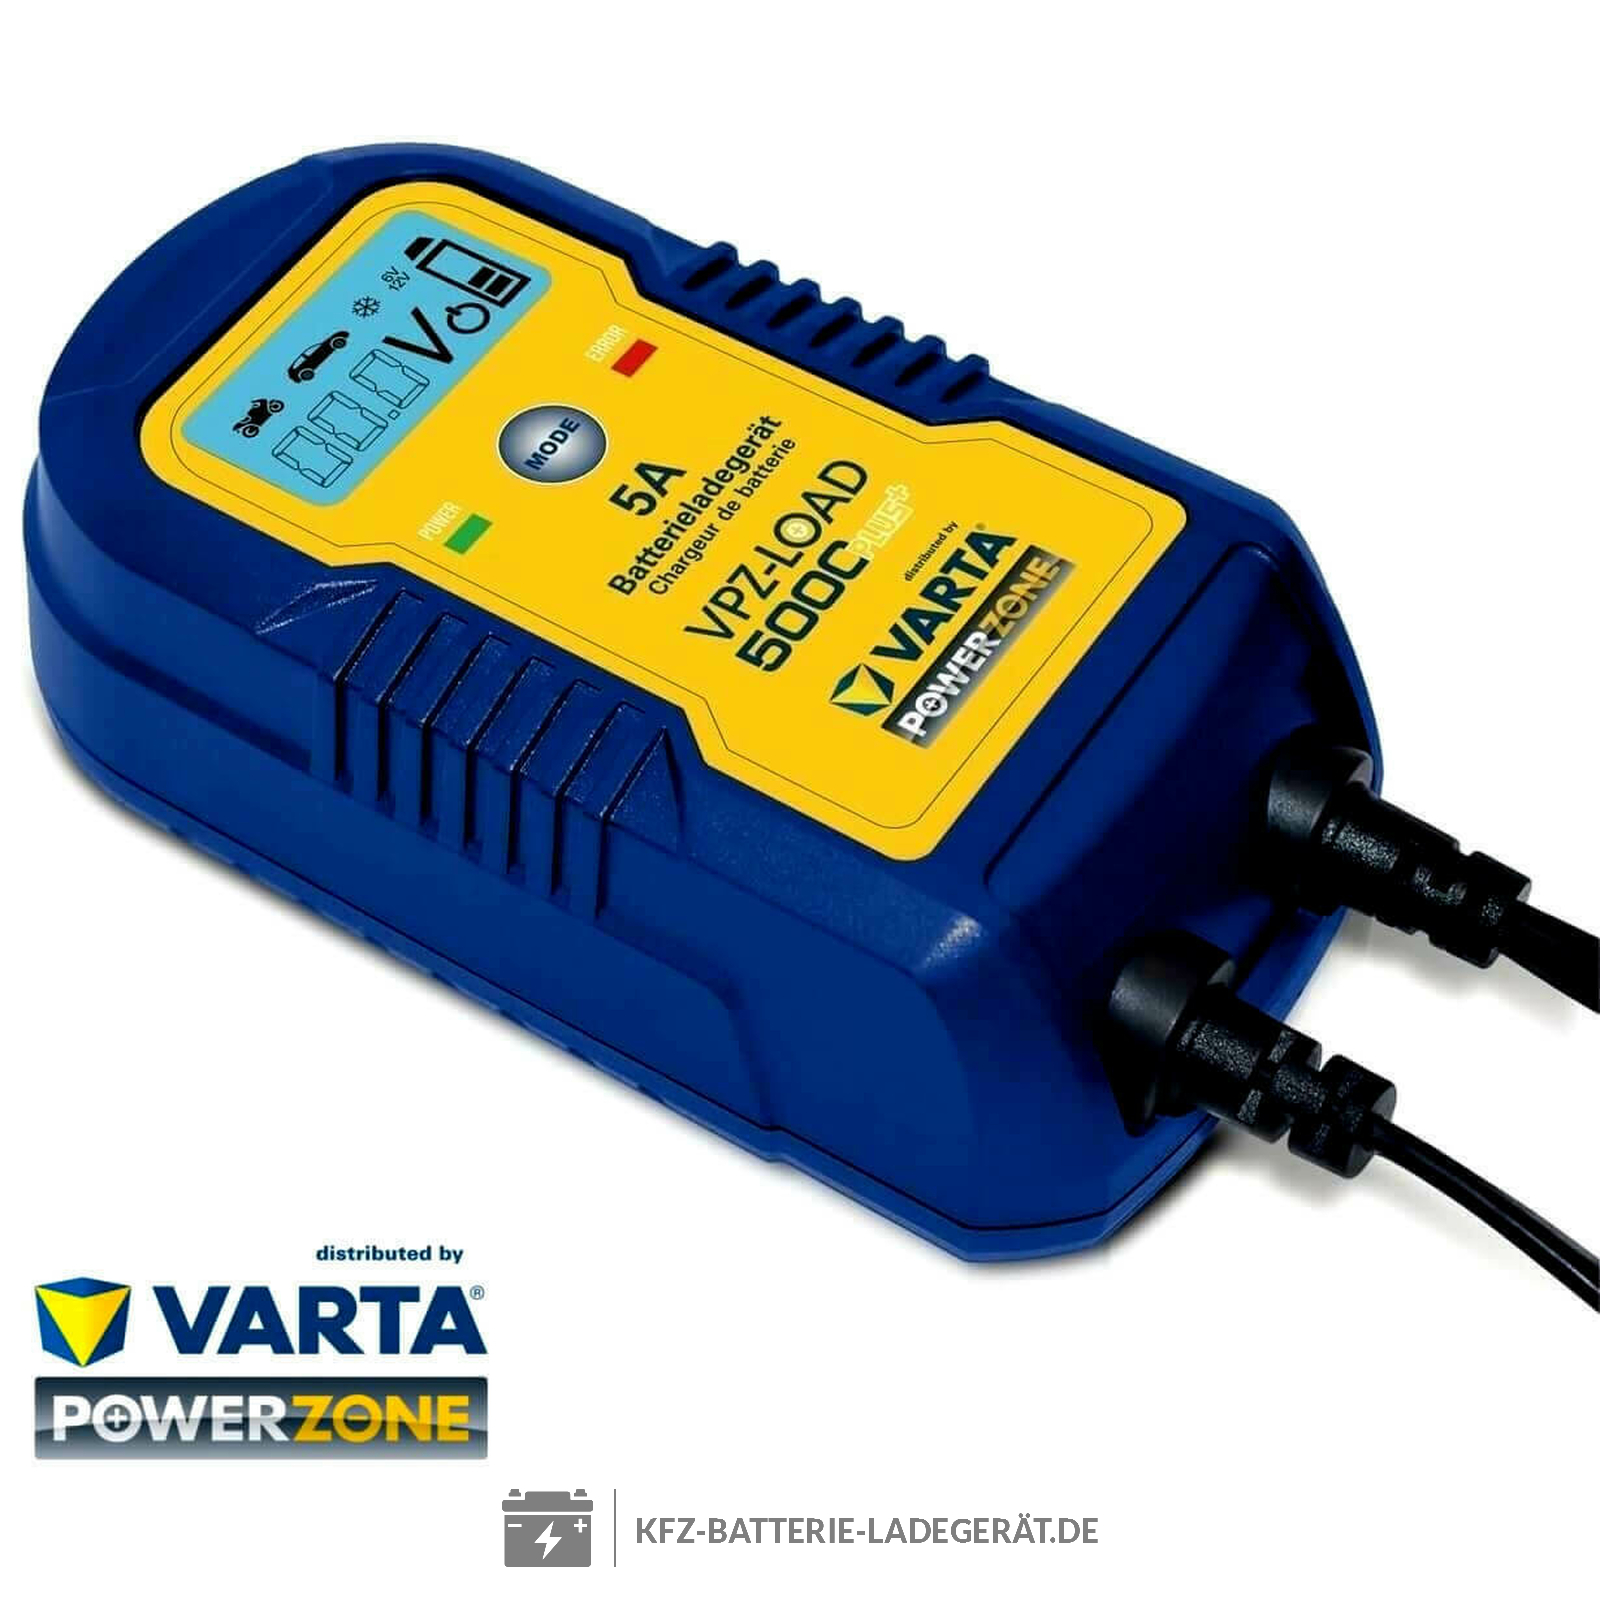 https://www.kfz-batterie-ladegeraet.de/media/image/product/27085/lg/varta-power-zone-duo-ladegeraet-6v-12v-vpz-load5000-plus-blei-ca-ca-agm-gel-sla.jpg